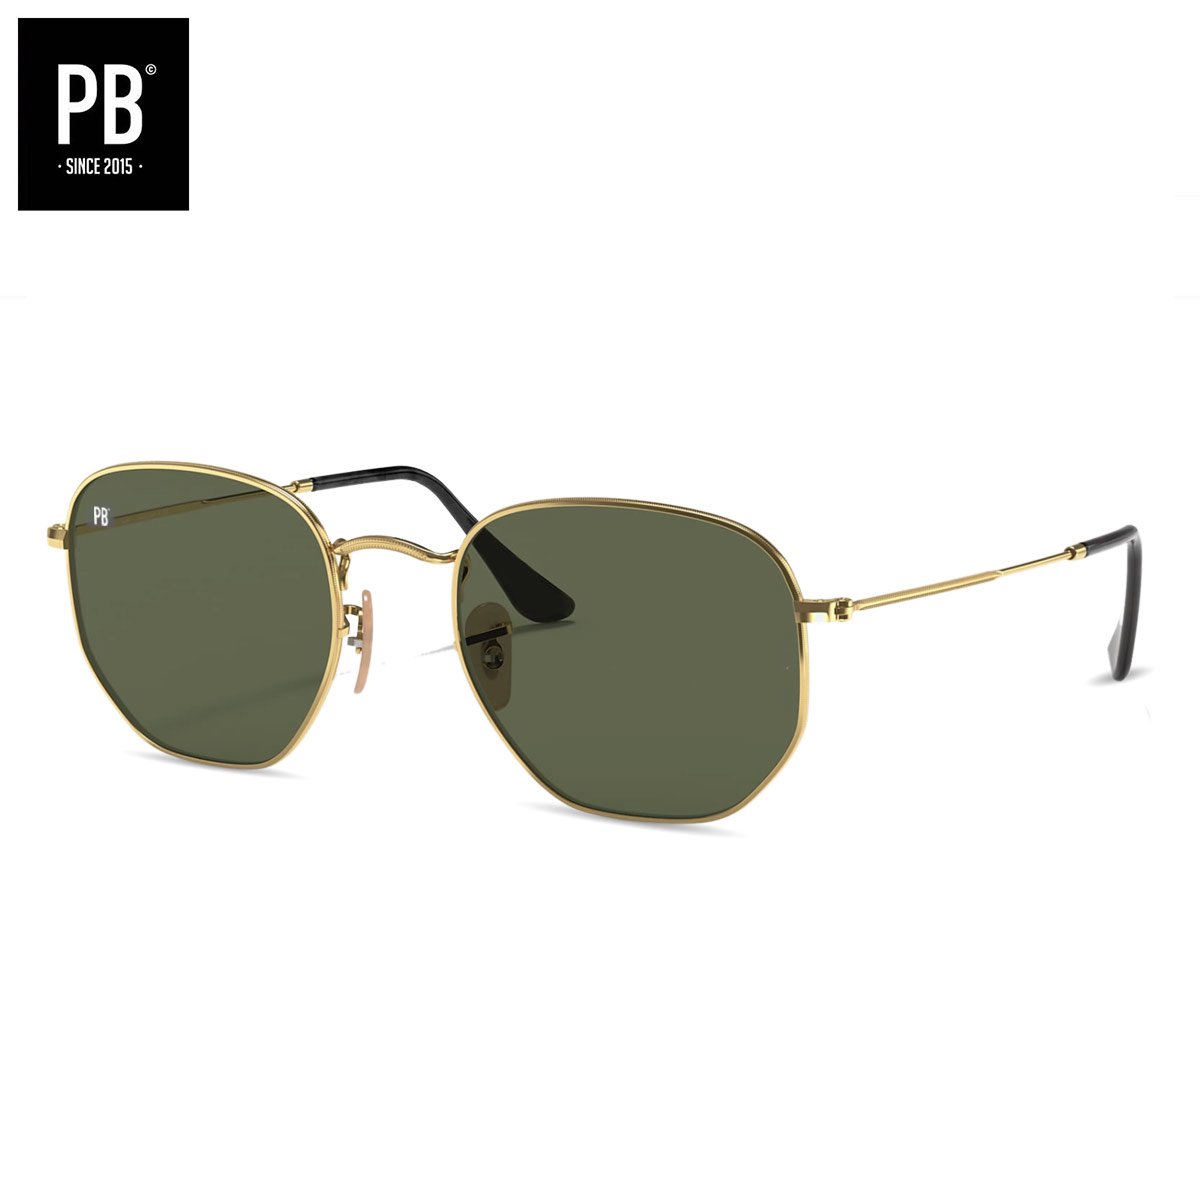 PB Sunglasses - Hex Metal Polarised. - Zonnebril heren en dames - Gepolariseerd - Goud metalen frame - Hexagon stijl - PB Sunglasses®